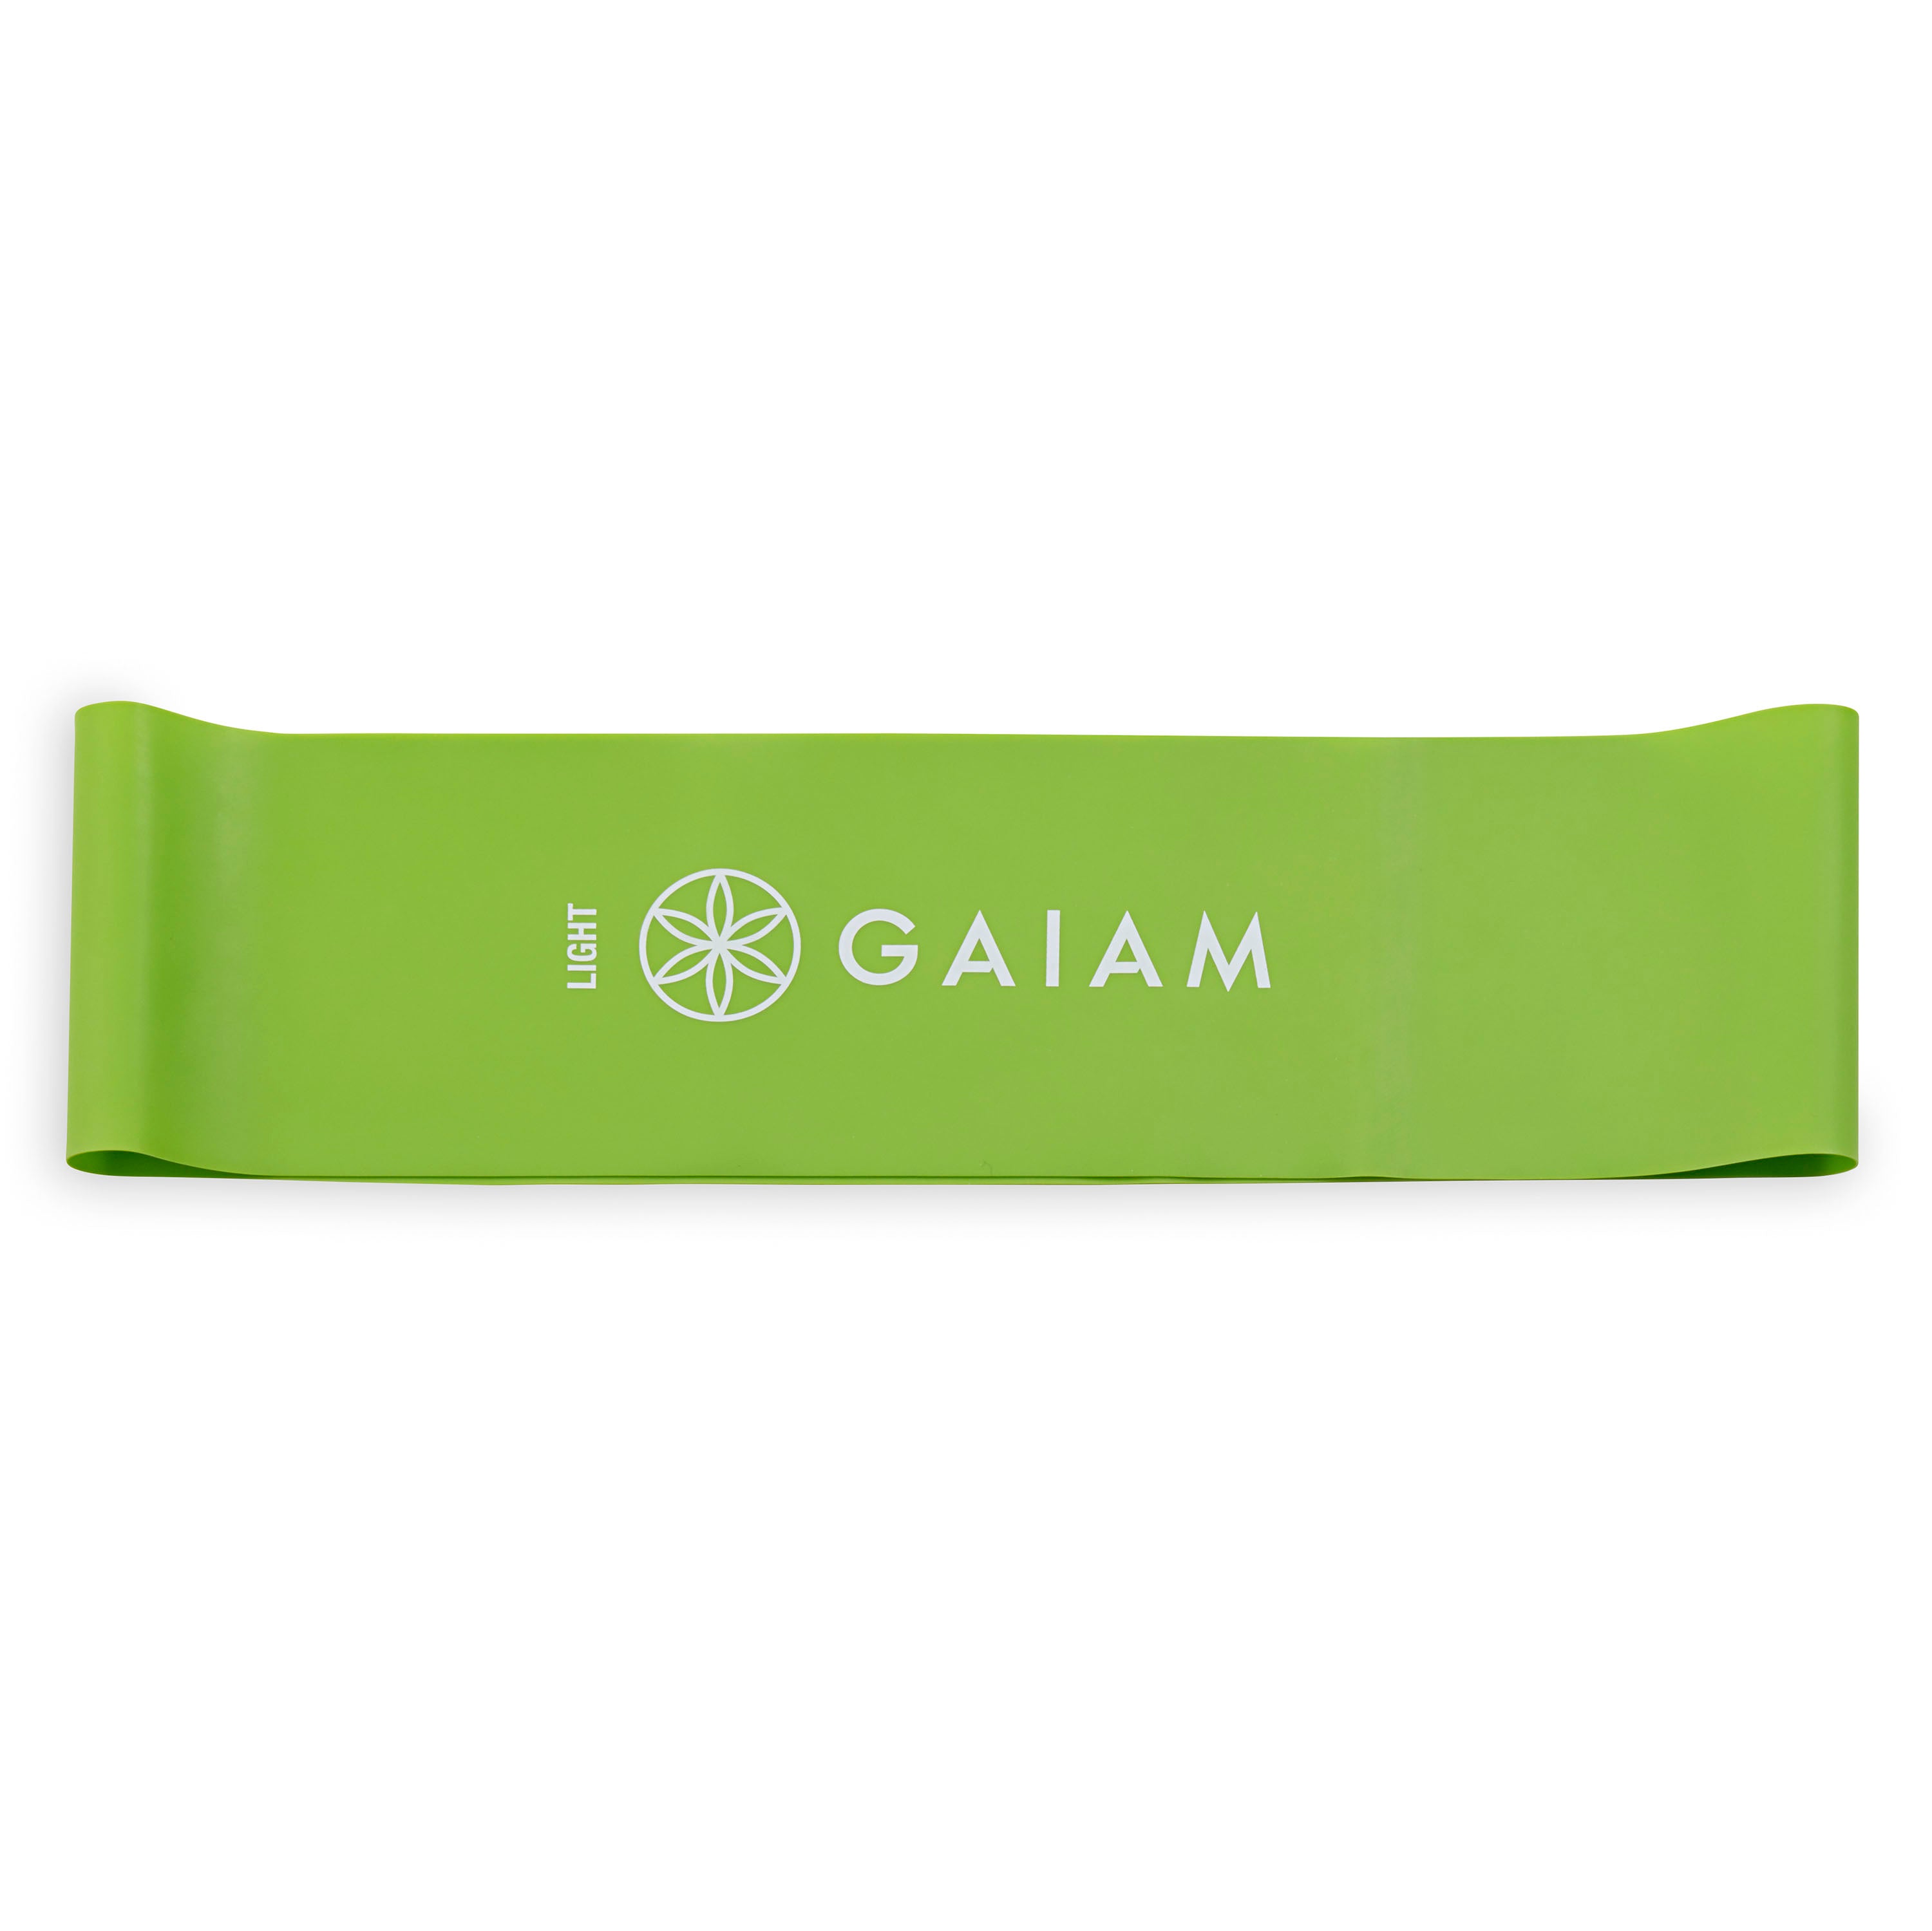 Gaiam Restore Loop Band Kit light